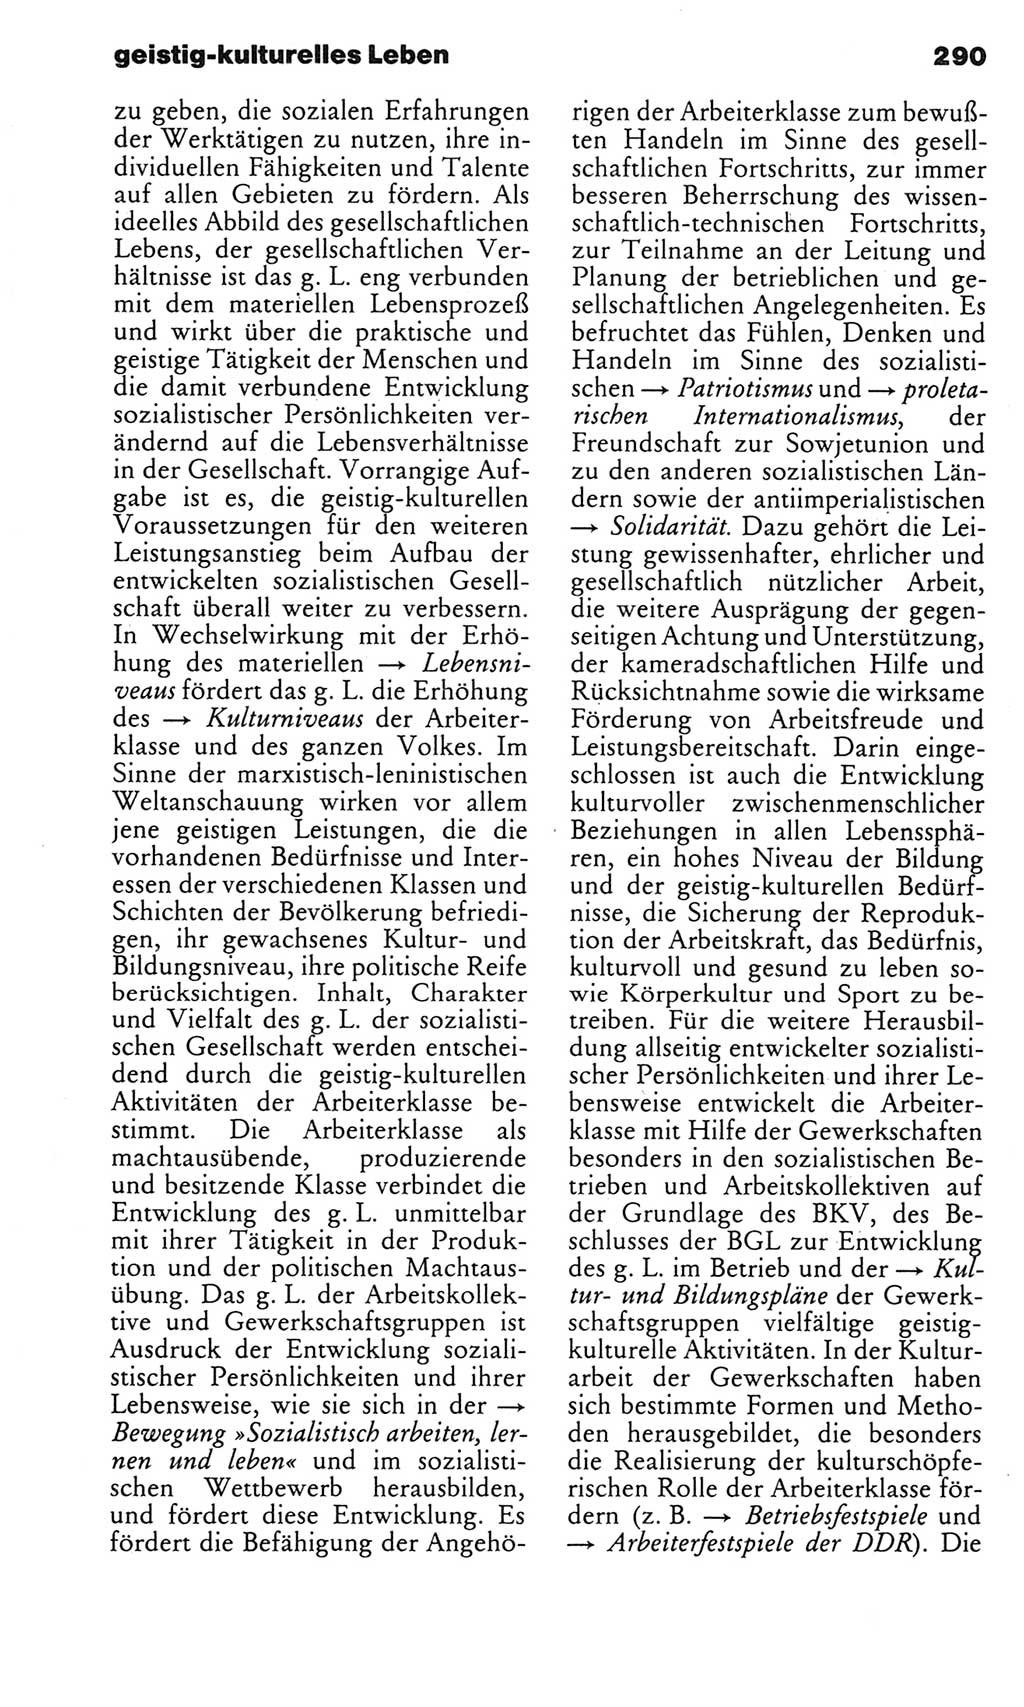 Kleines politisches Wörterbuch [Deutsche Demokratische Republik (DDR)] 1983, Seite 290 (Kl. pol. Wb. DDR 1983, S. 290)